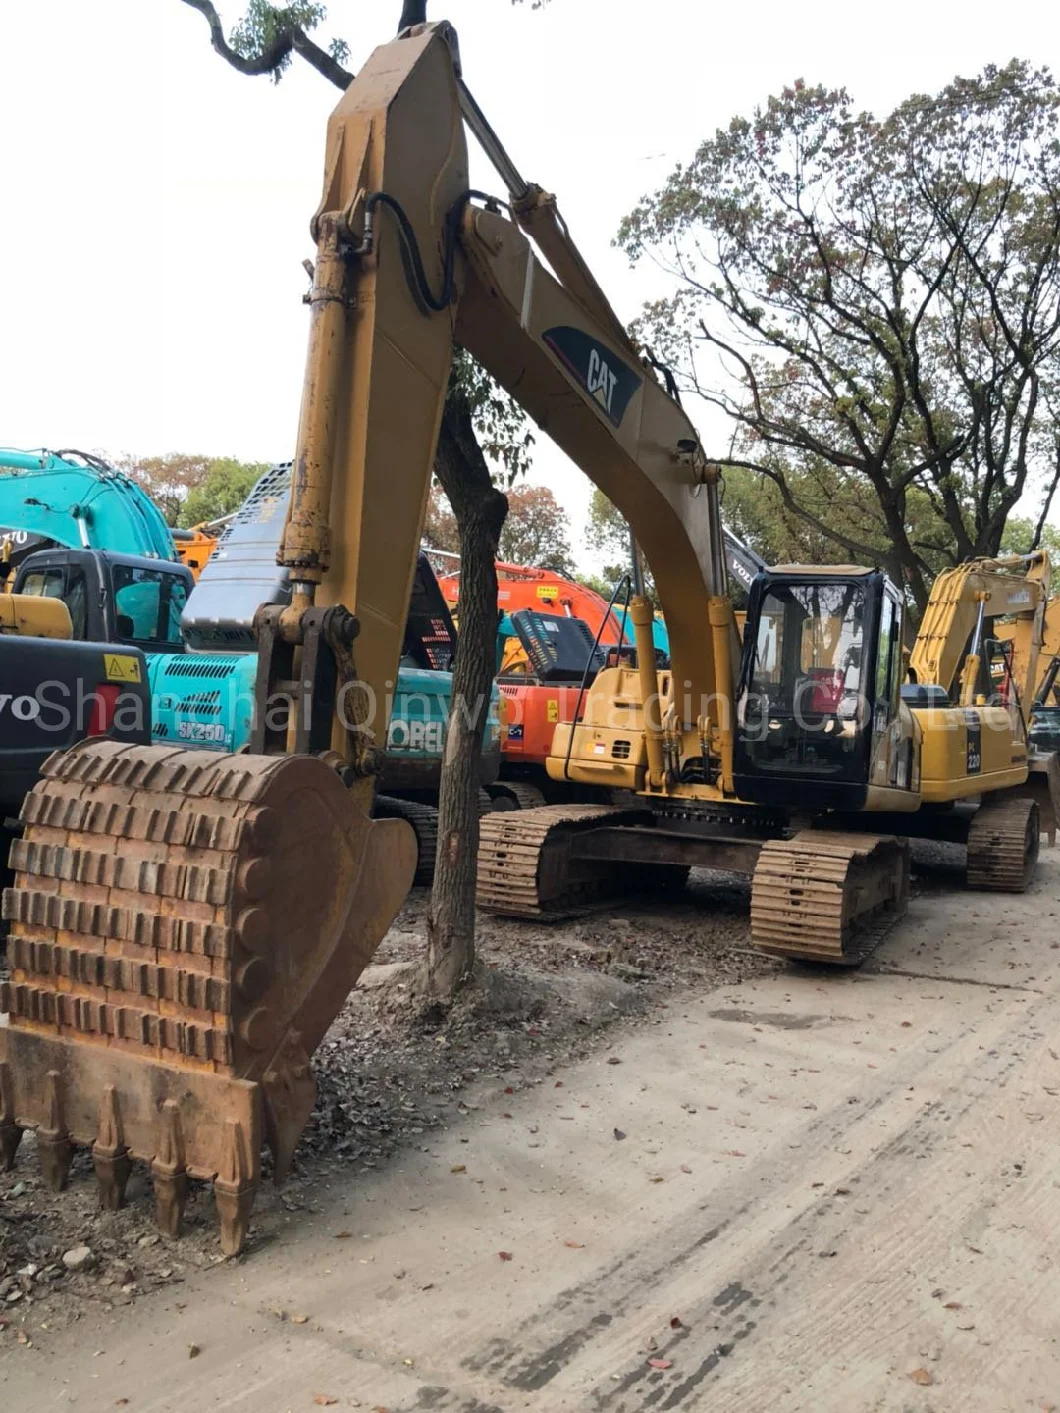 Used Cat 320c Excavator Caterpillar 320c Construction Machine Hydraulic Cralwer Mining Excavator